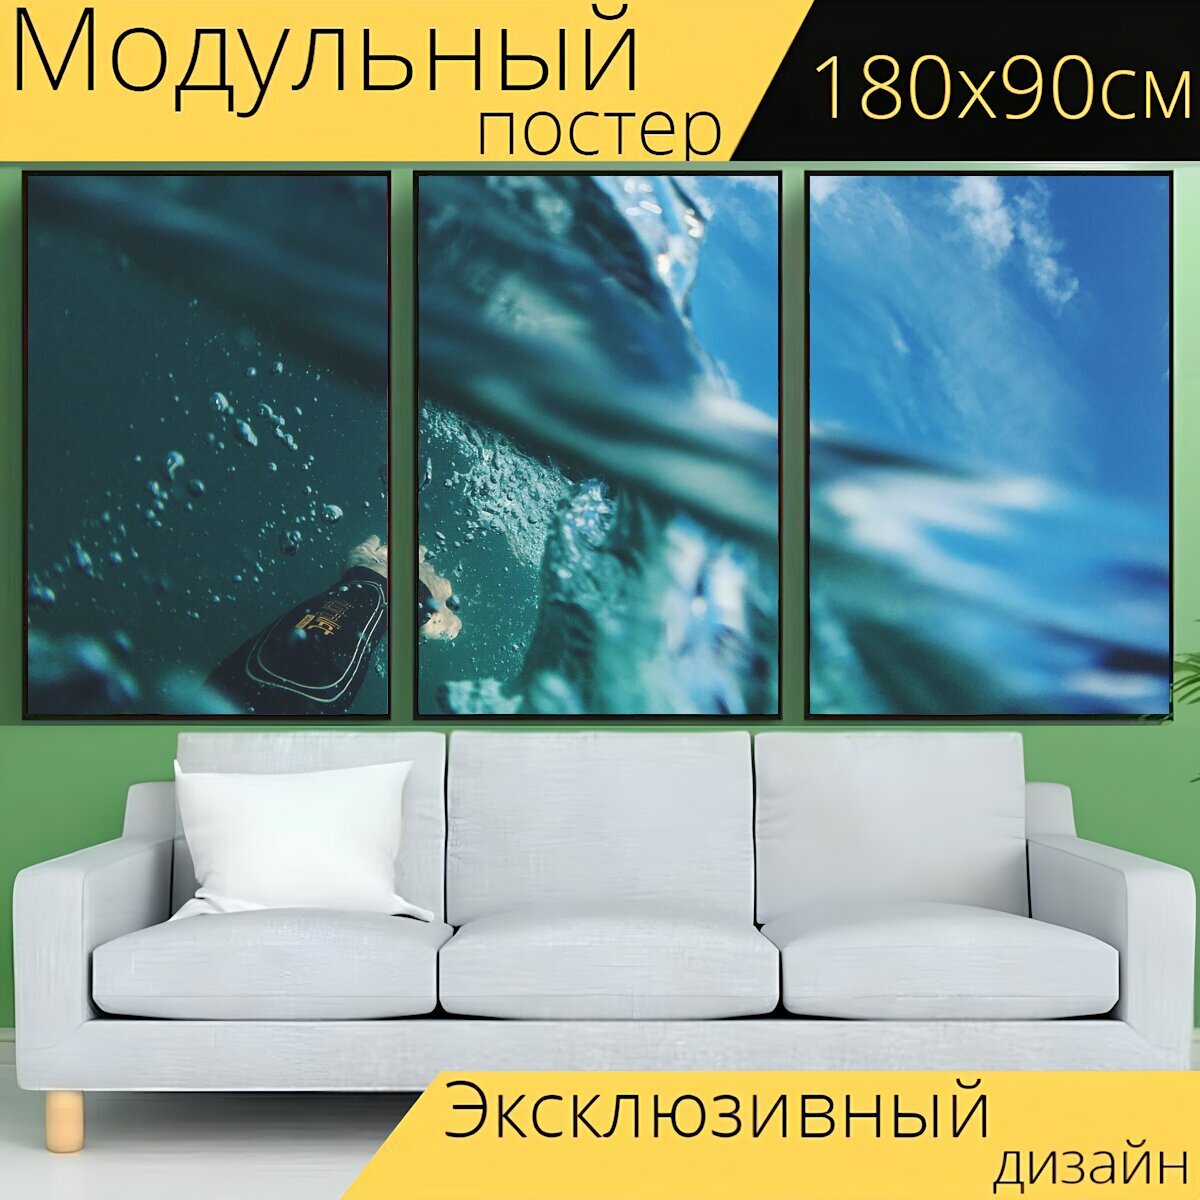 Модульный постер "Дайвинг, вода, поверхность" 180 x 90 см. для интерьера